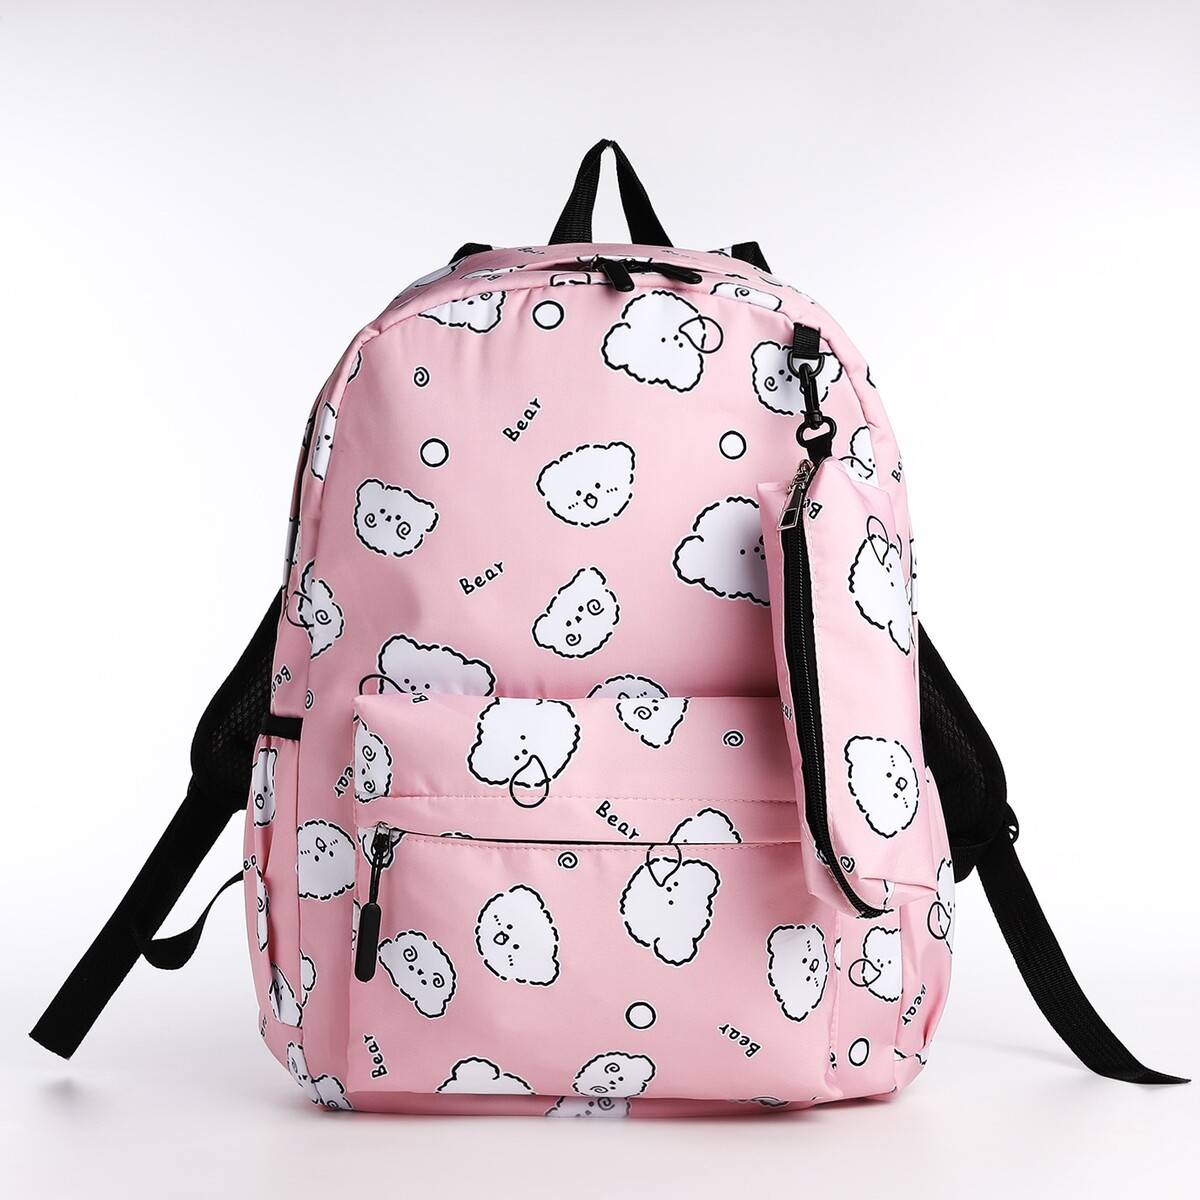 Рюкзак школьный из текстиля на молнии, 3 кармана, пенал, цвет розовый рюкзак школьный из текстиля на молнии 3 кармана пенал белый разно ный